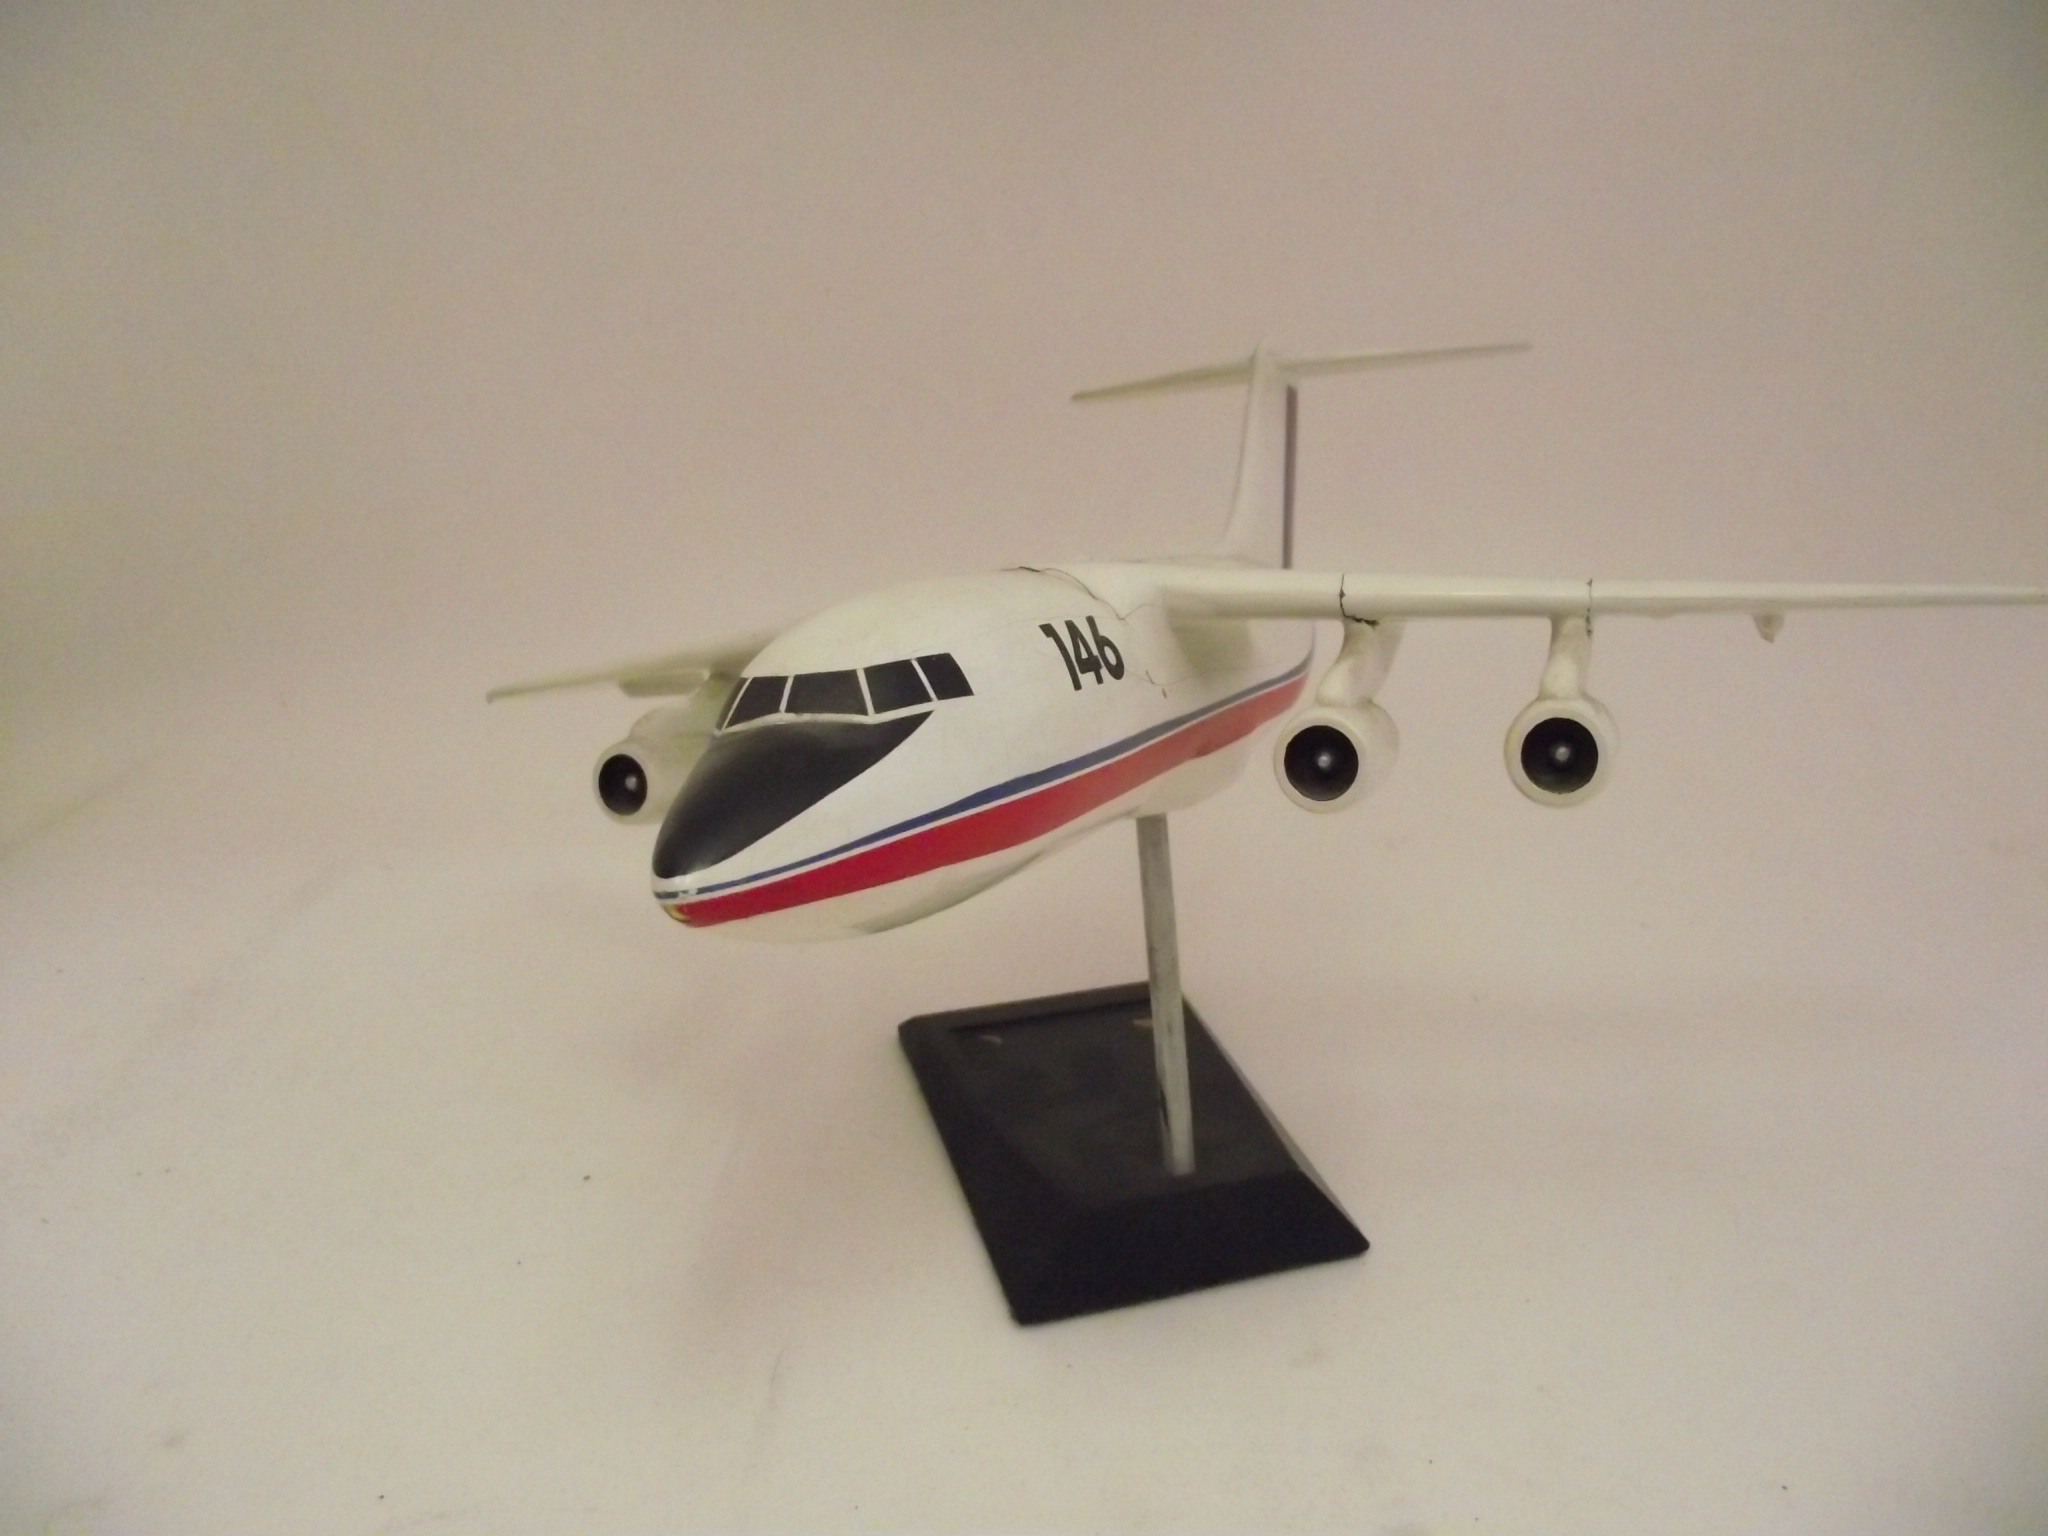 BAC 146